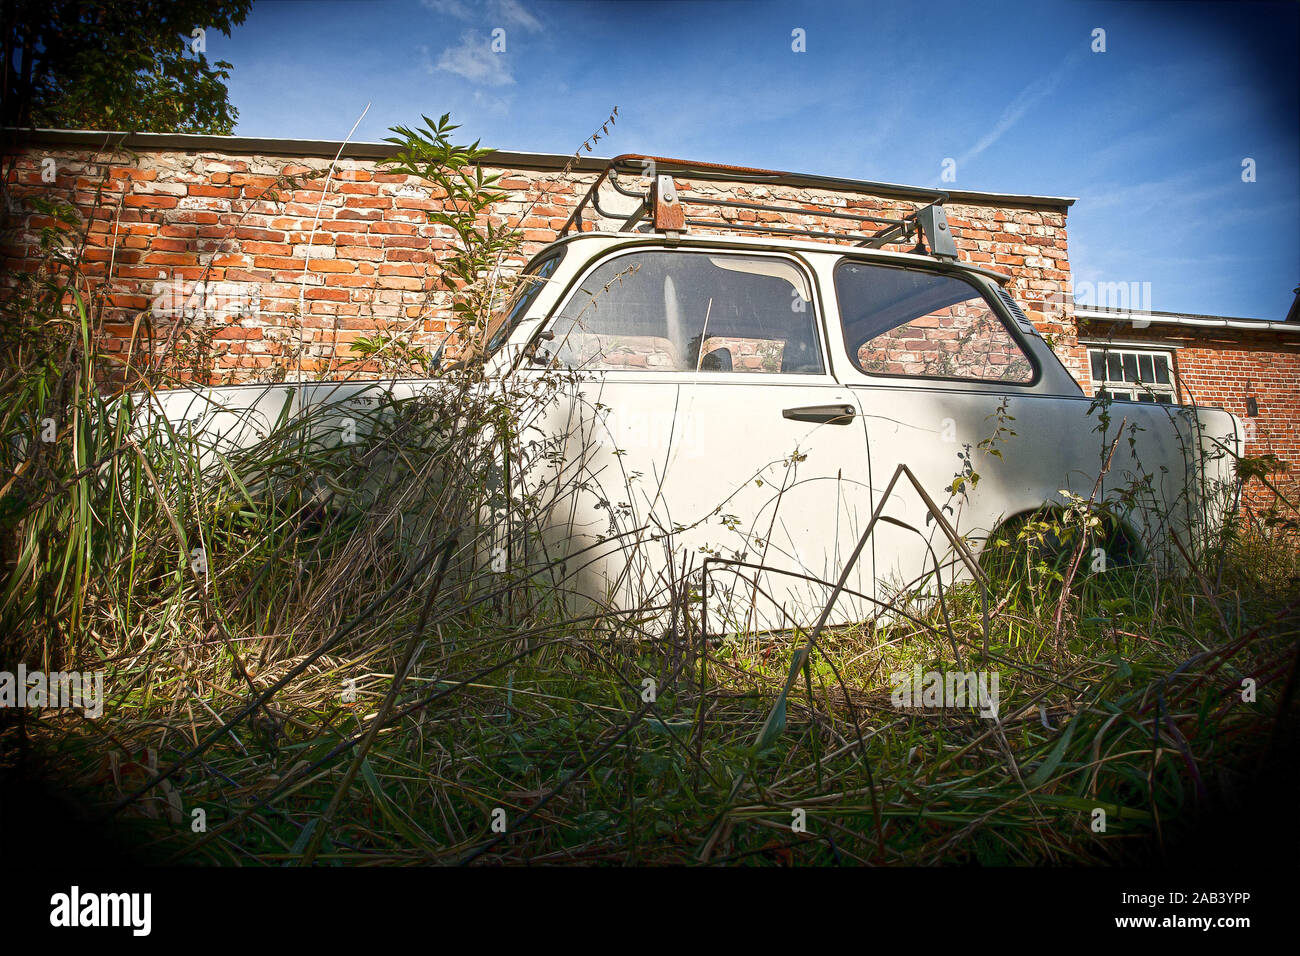 Alter Trabant ohne R‰der in einem Garten |Old Trabant without wheels in a garden| Stock Photo